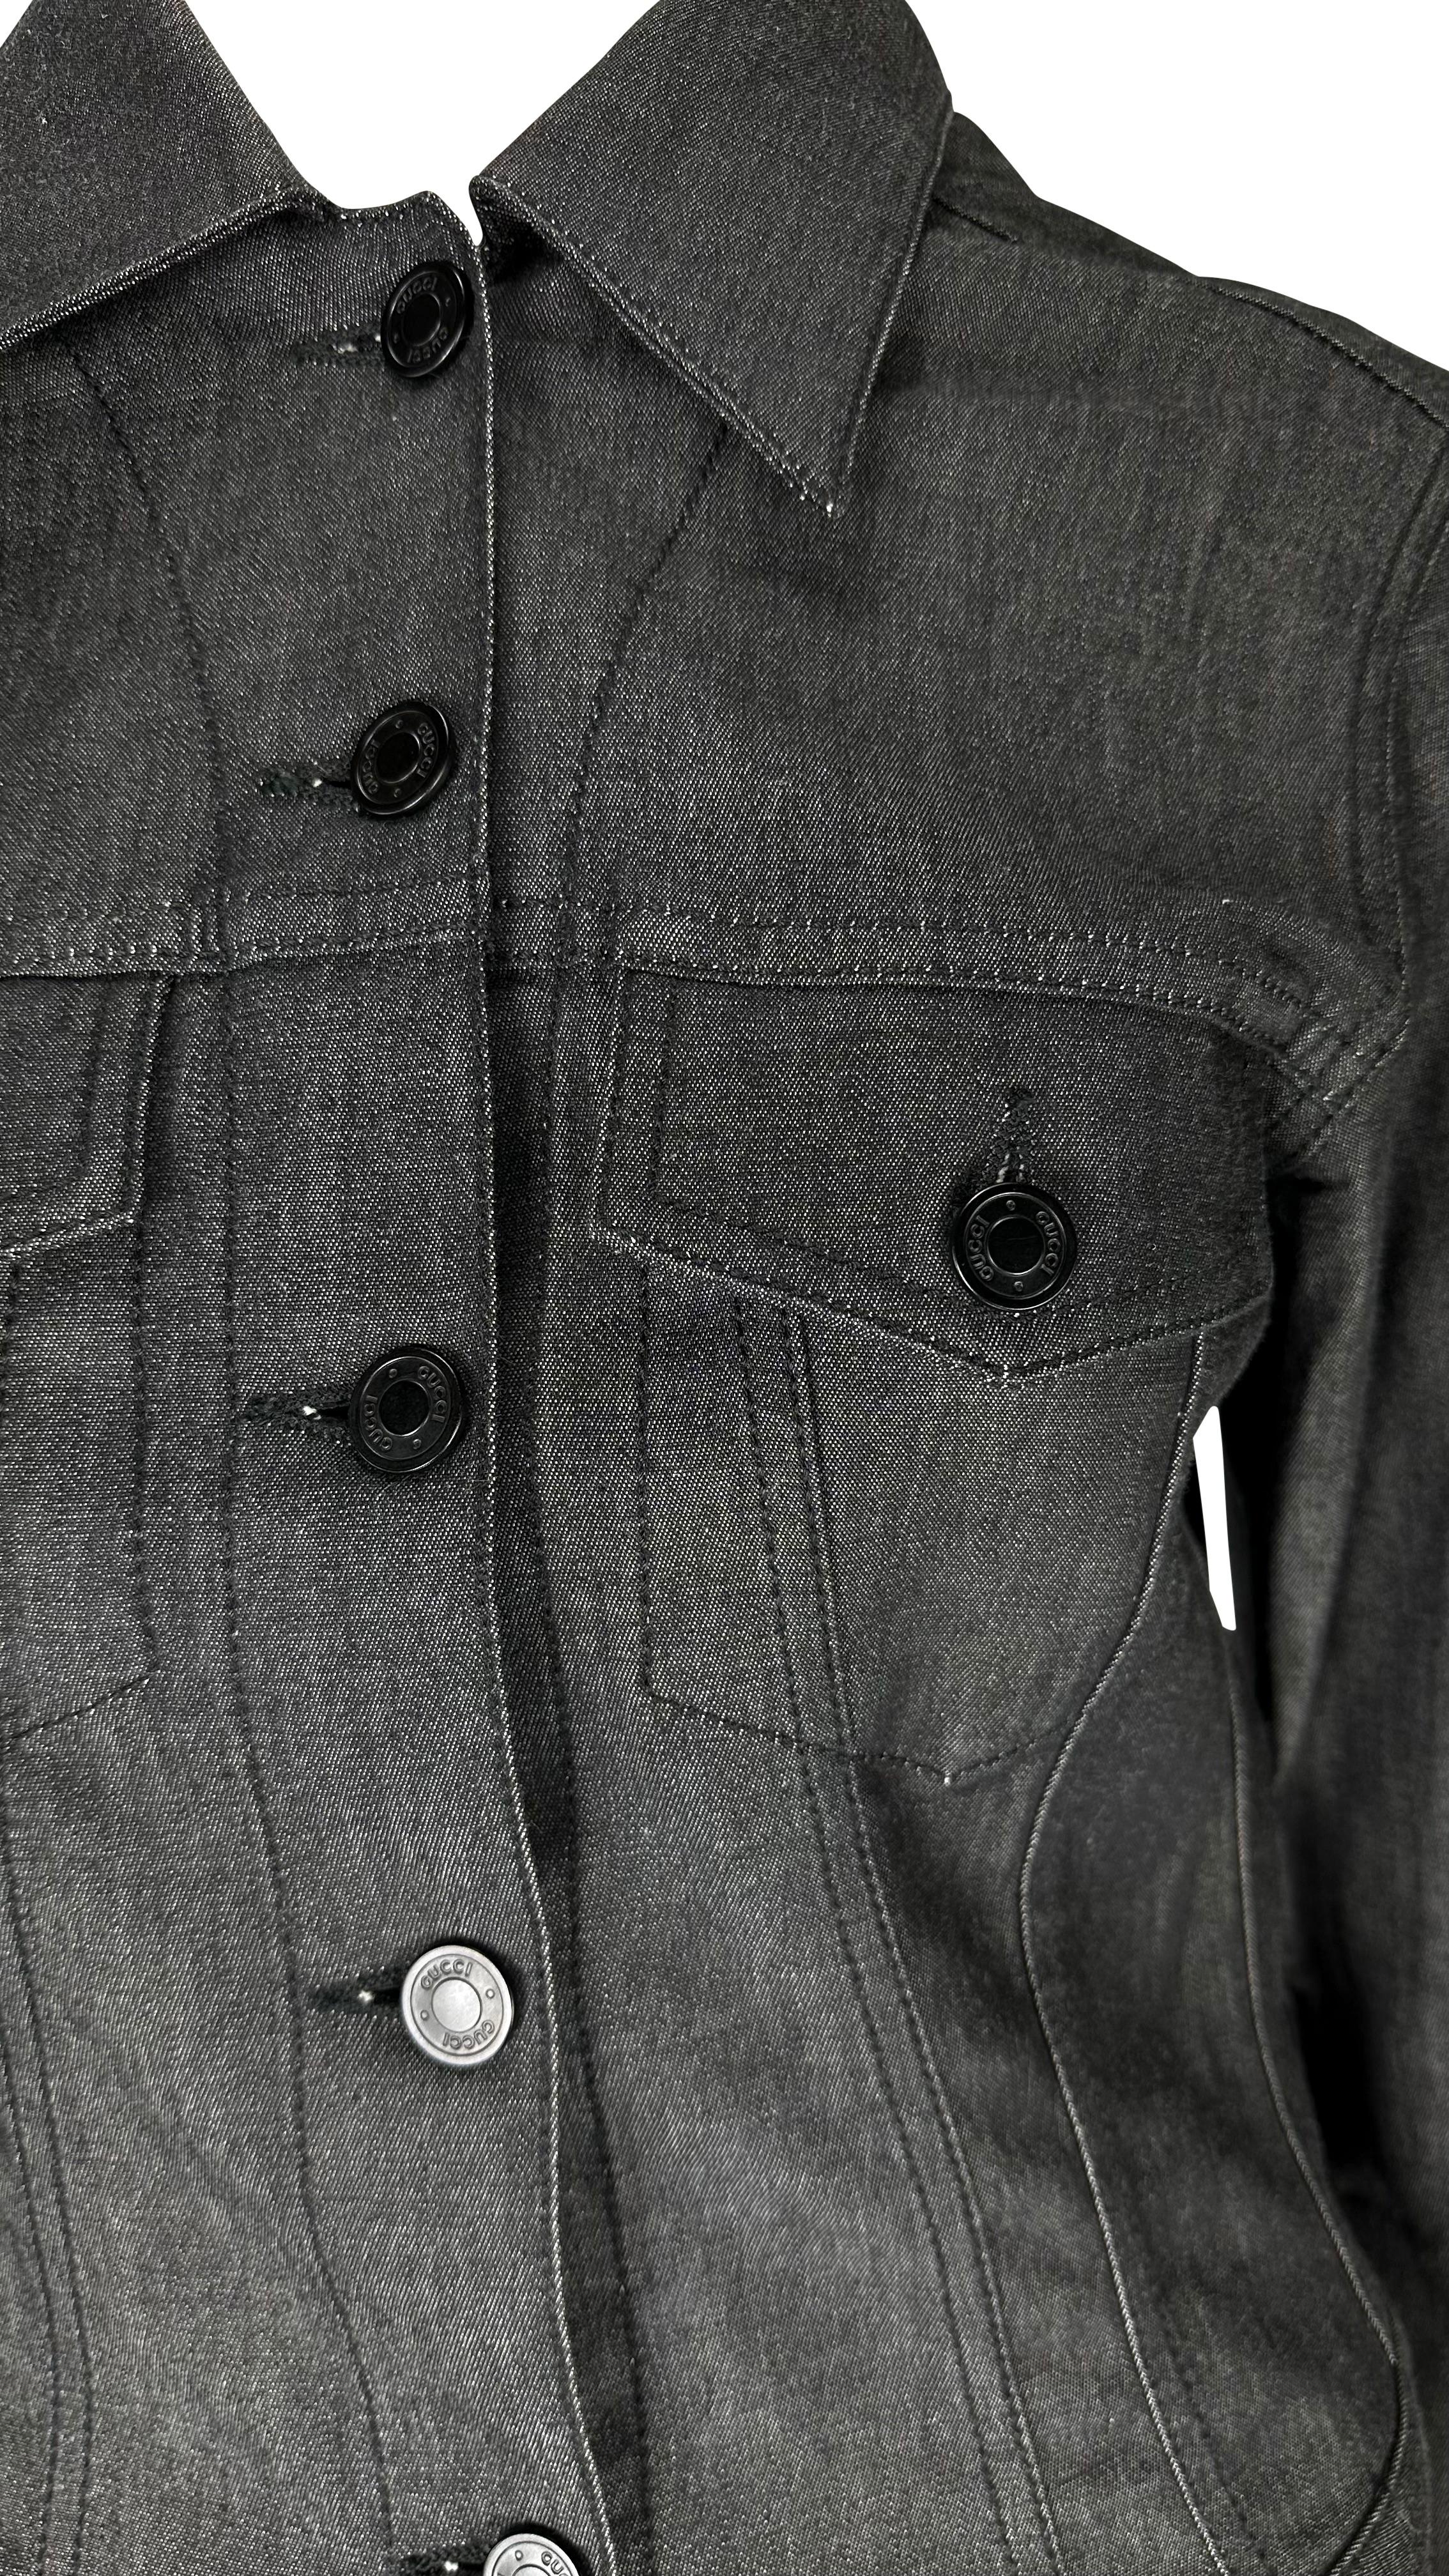 Wir präsentieren eine schwarze Jeansjacke im Trucker-Stil von Gucci, entworfen von Tom Ford. Diese Jacke, die 2001 auf den Markt kam, verleiht der durchschnittlichen Jeansjacke den perfekten Luxus-Pop. Die Vorderseite der Jacke ist mit schwarzen